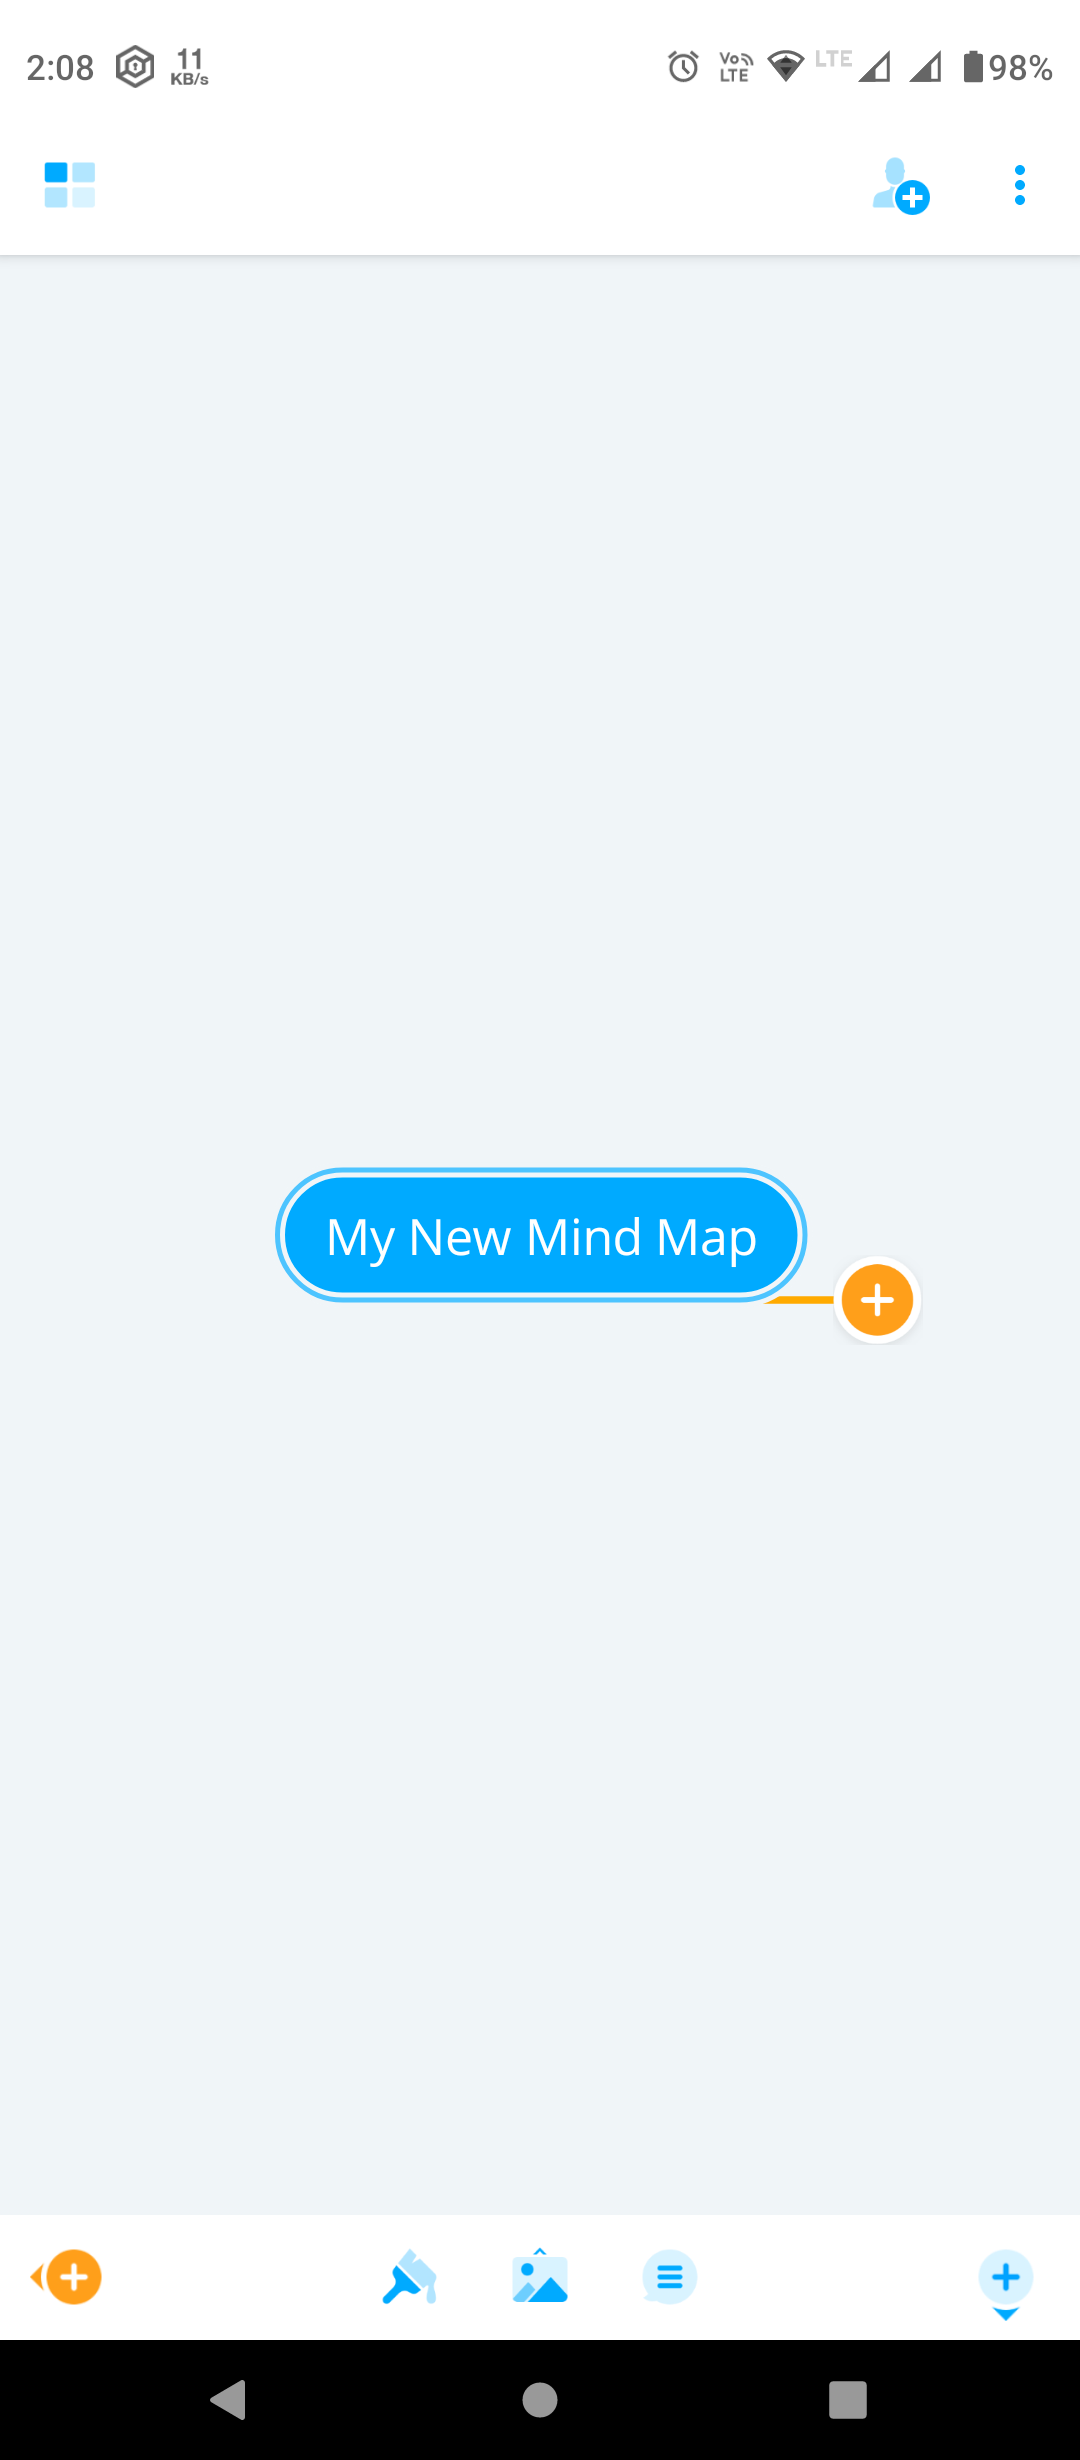 MindMeister's mind map tool